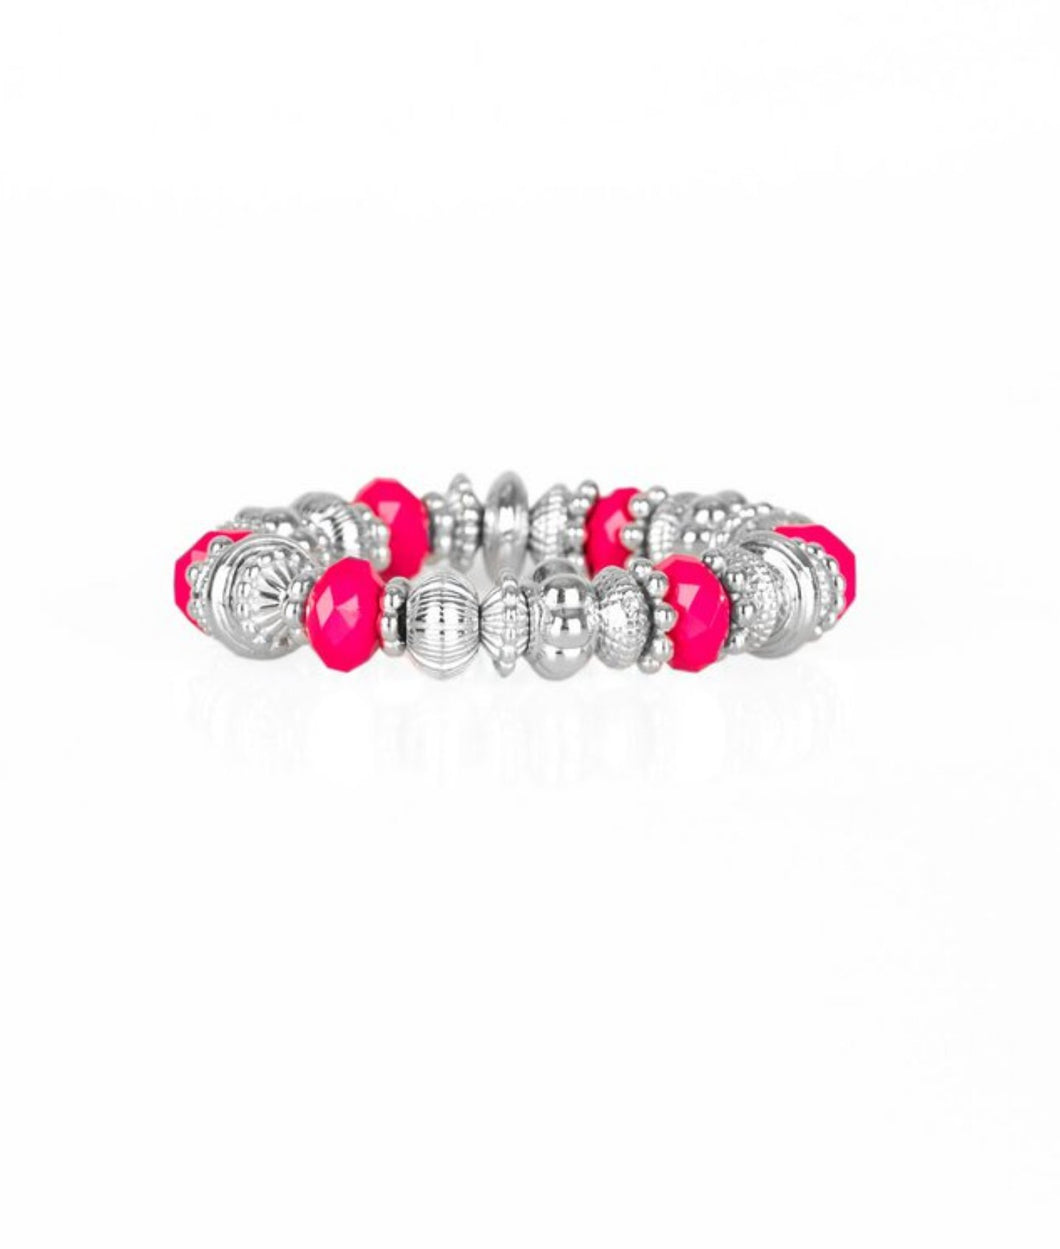 Live Life To The COLOR-fullest Pink Bracelet